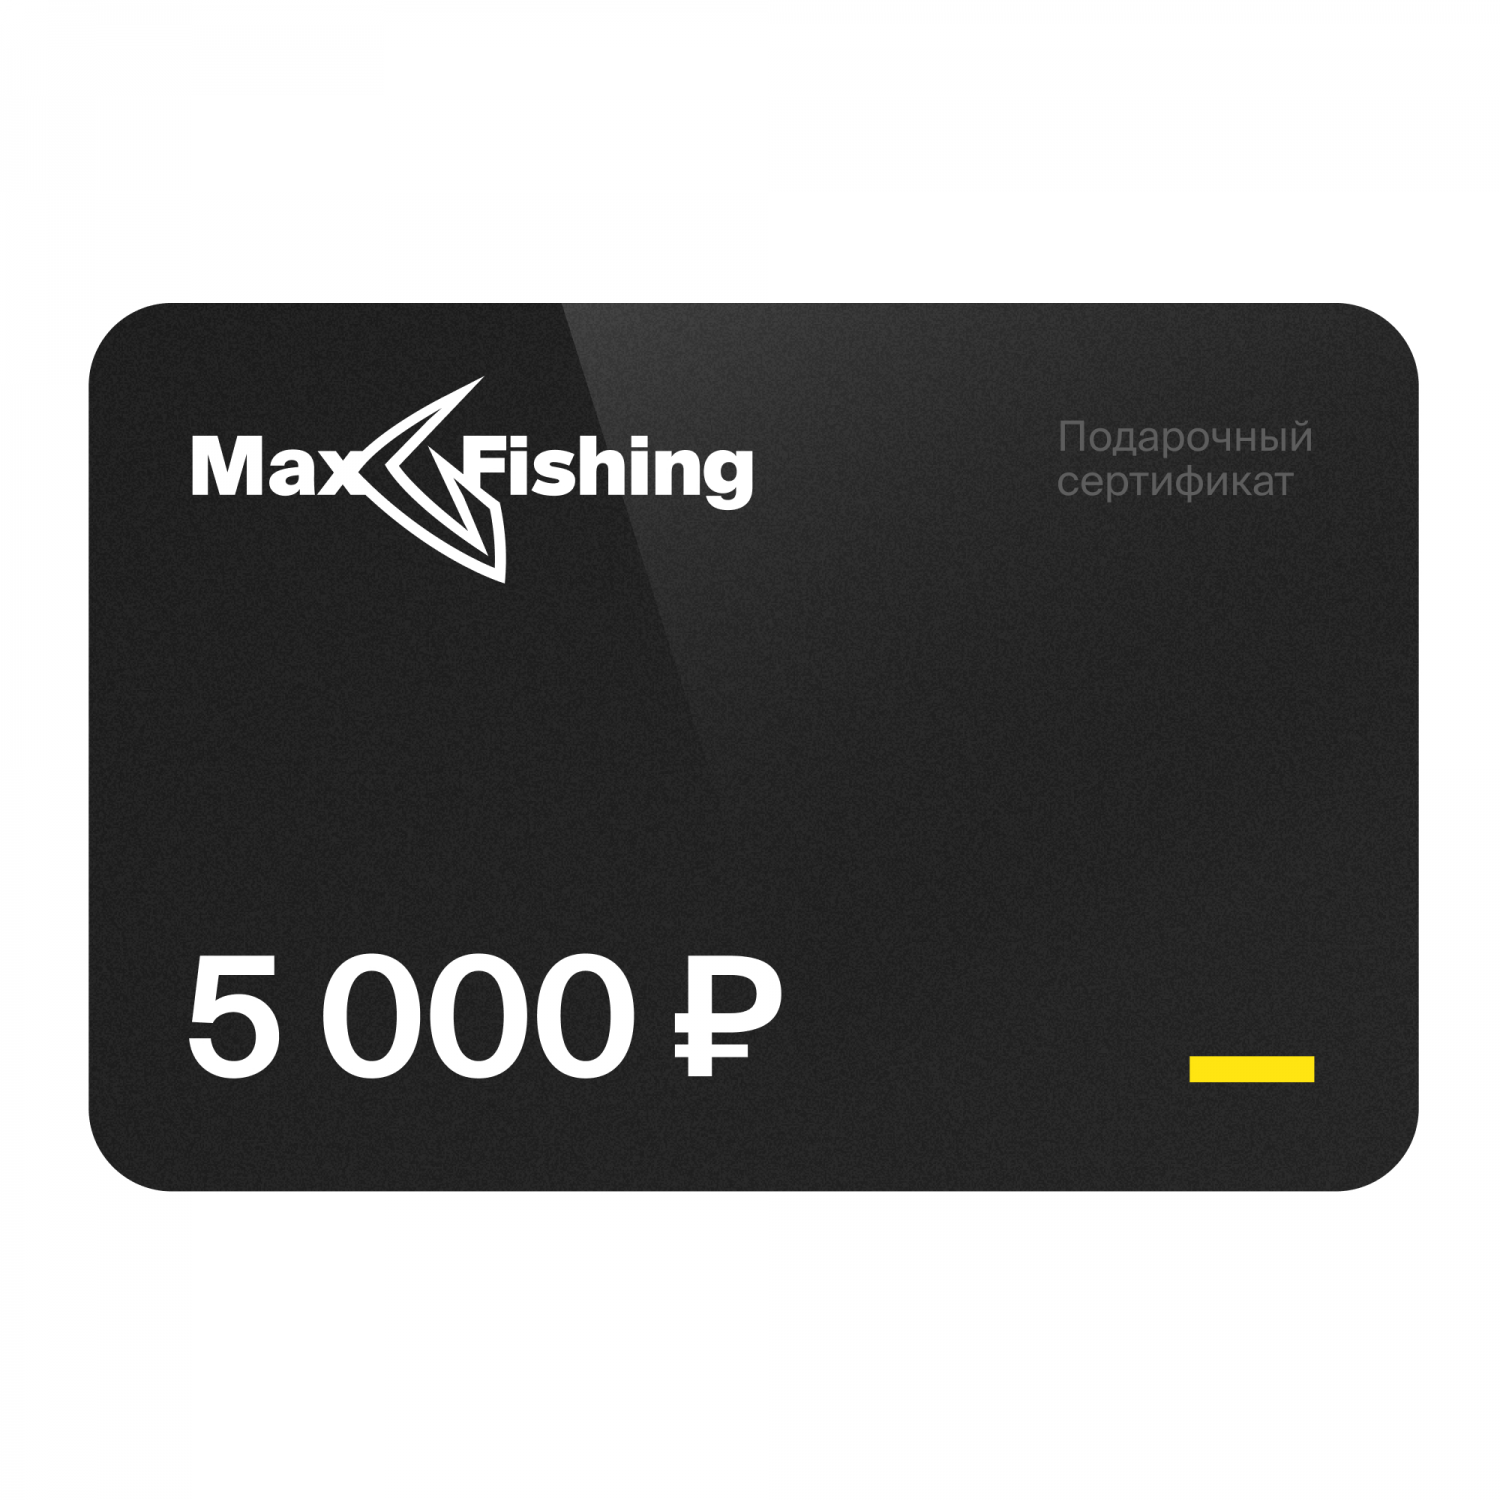 Подарочный сертификат MaxFishing 5 000 ₽ подарочный сертификат на 5 000 рублей